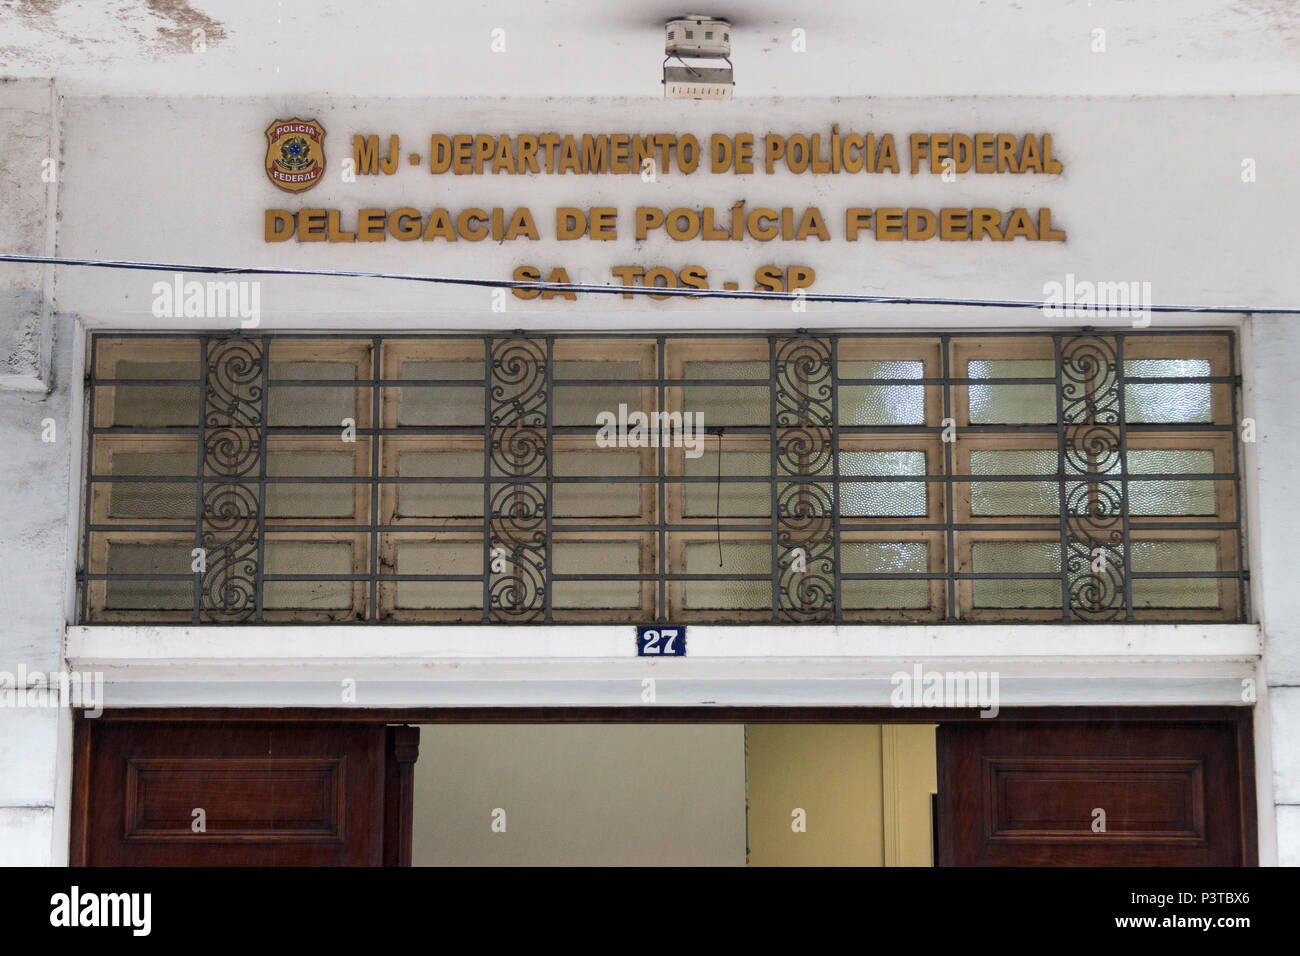 SANTOS, SP - 30.11.2015: DEPARTAMENTO DA POLICIA FEDERAL DE SANTOS -  Fachada do Departamento da Policia Federal da cidade de Santos. (Foto:  Artur de Abreu / Fotoarena Stock Photo - Alamy